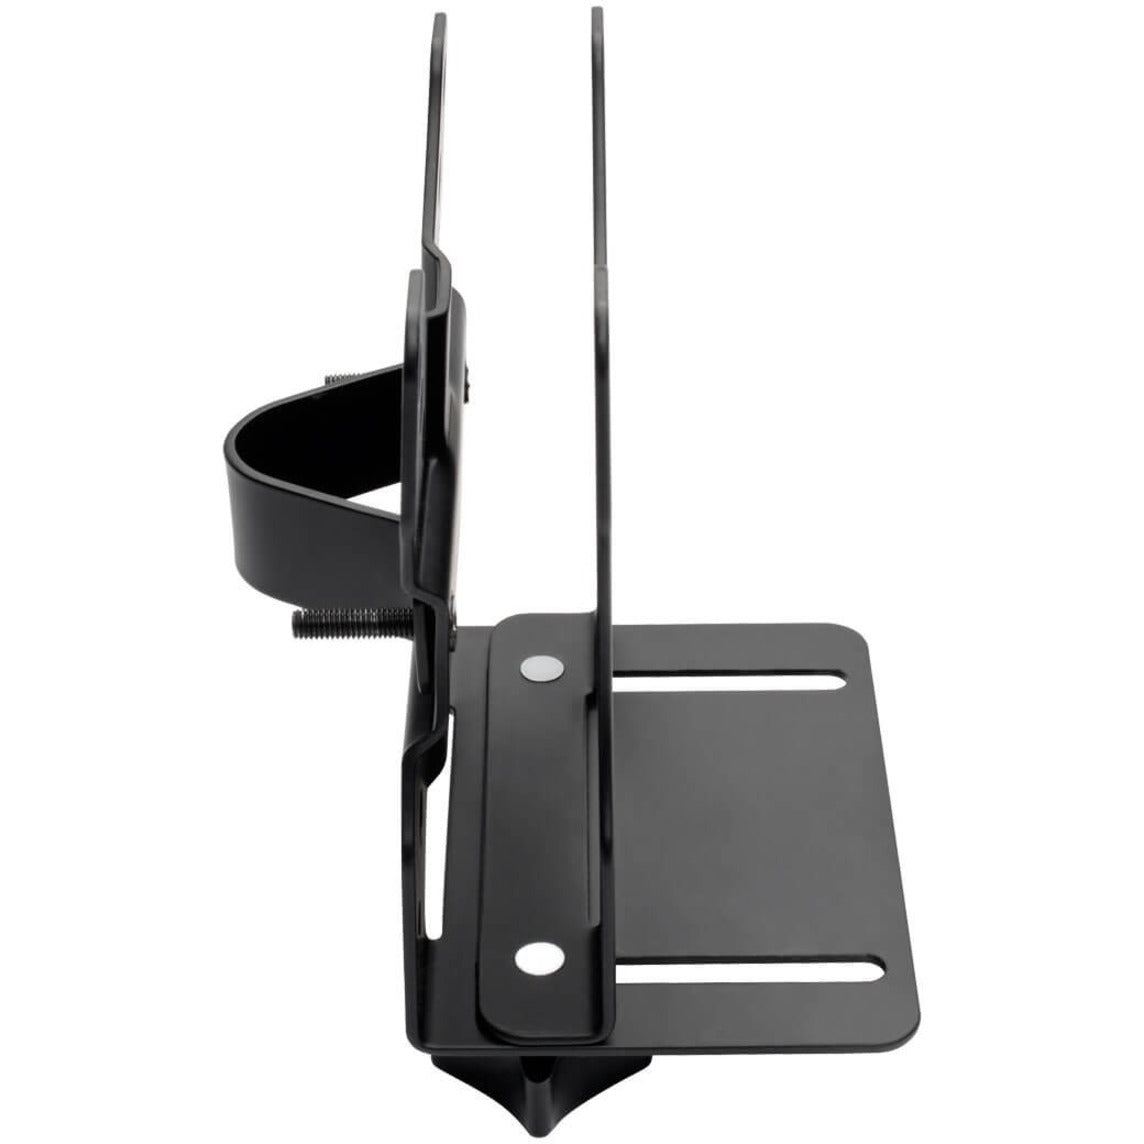 特瑞普利特 DMATC 通用薄客户端监视器支架，安装适配器套件，11.02 磅最大负荷能力，黑色粉末涂层 特瑞普利特品牌 特瑞普利特